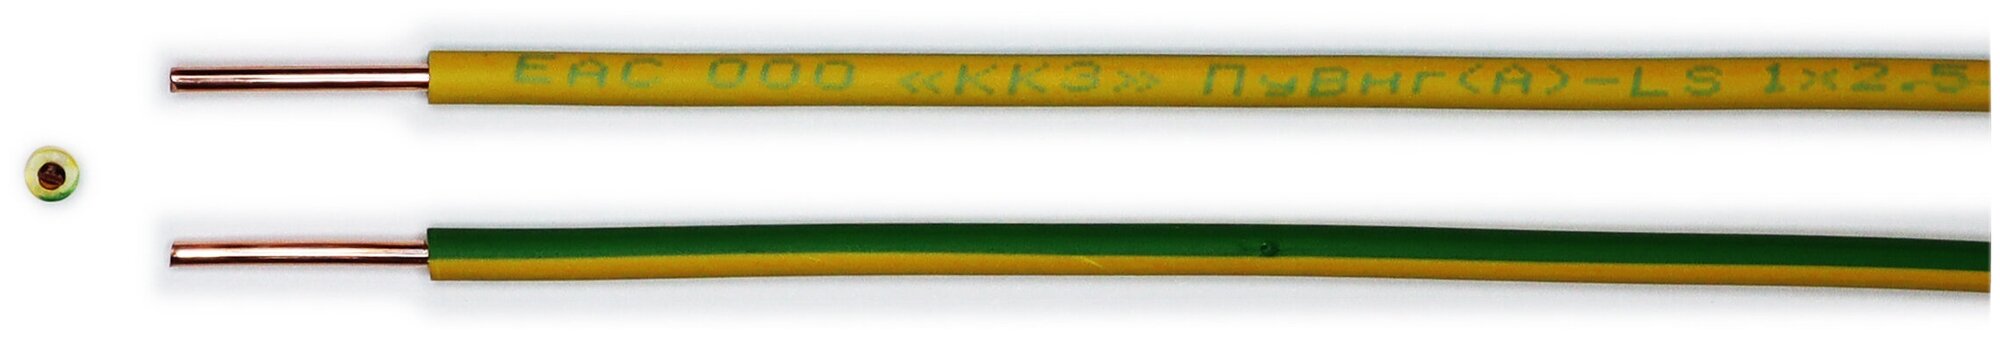 Провод ПуВ 1х2,5 ГОСТ Калужский кабельный завод. Желто-зелёный. 10 метров - фотография № 3